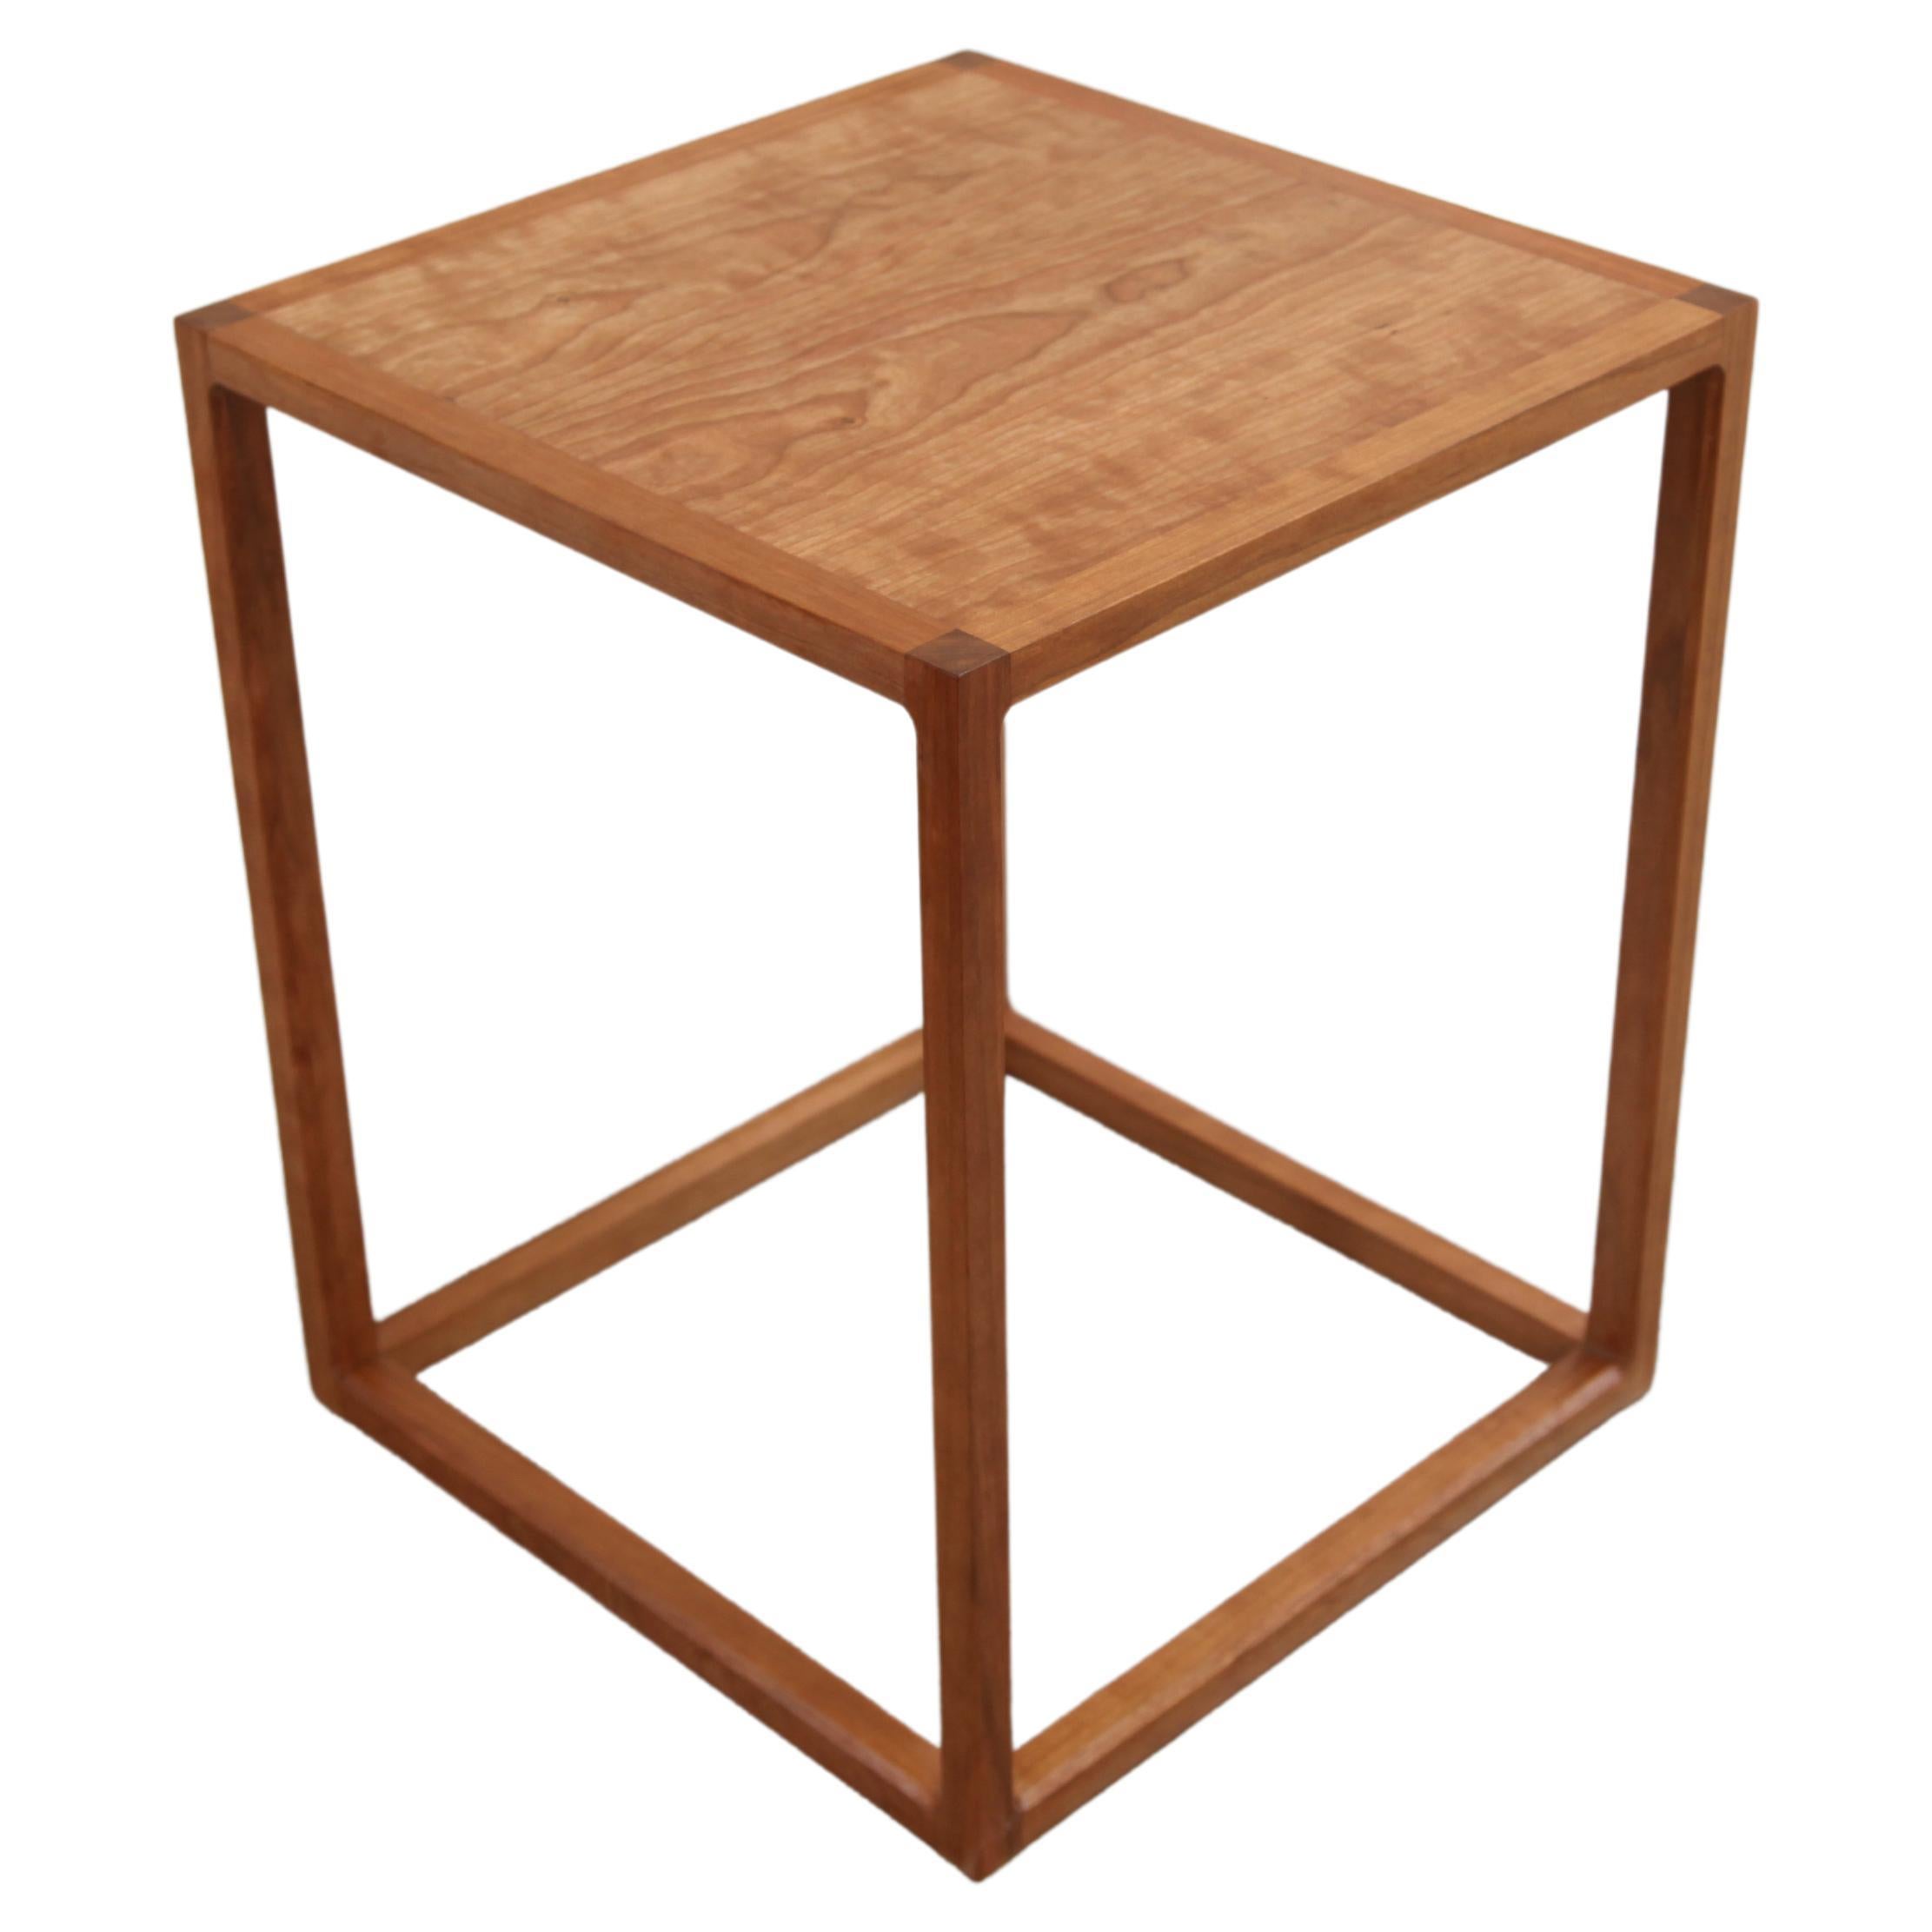 Cette table d'appoint en cerisier inspirée de Donald Judd a été conçue pour un client qui souhaitait une forme épurée et n'avait pas besoin d'un tiroir près de son lit. Il fait référence aux formes géométriques épurées de Donald Judd, mais incorpore